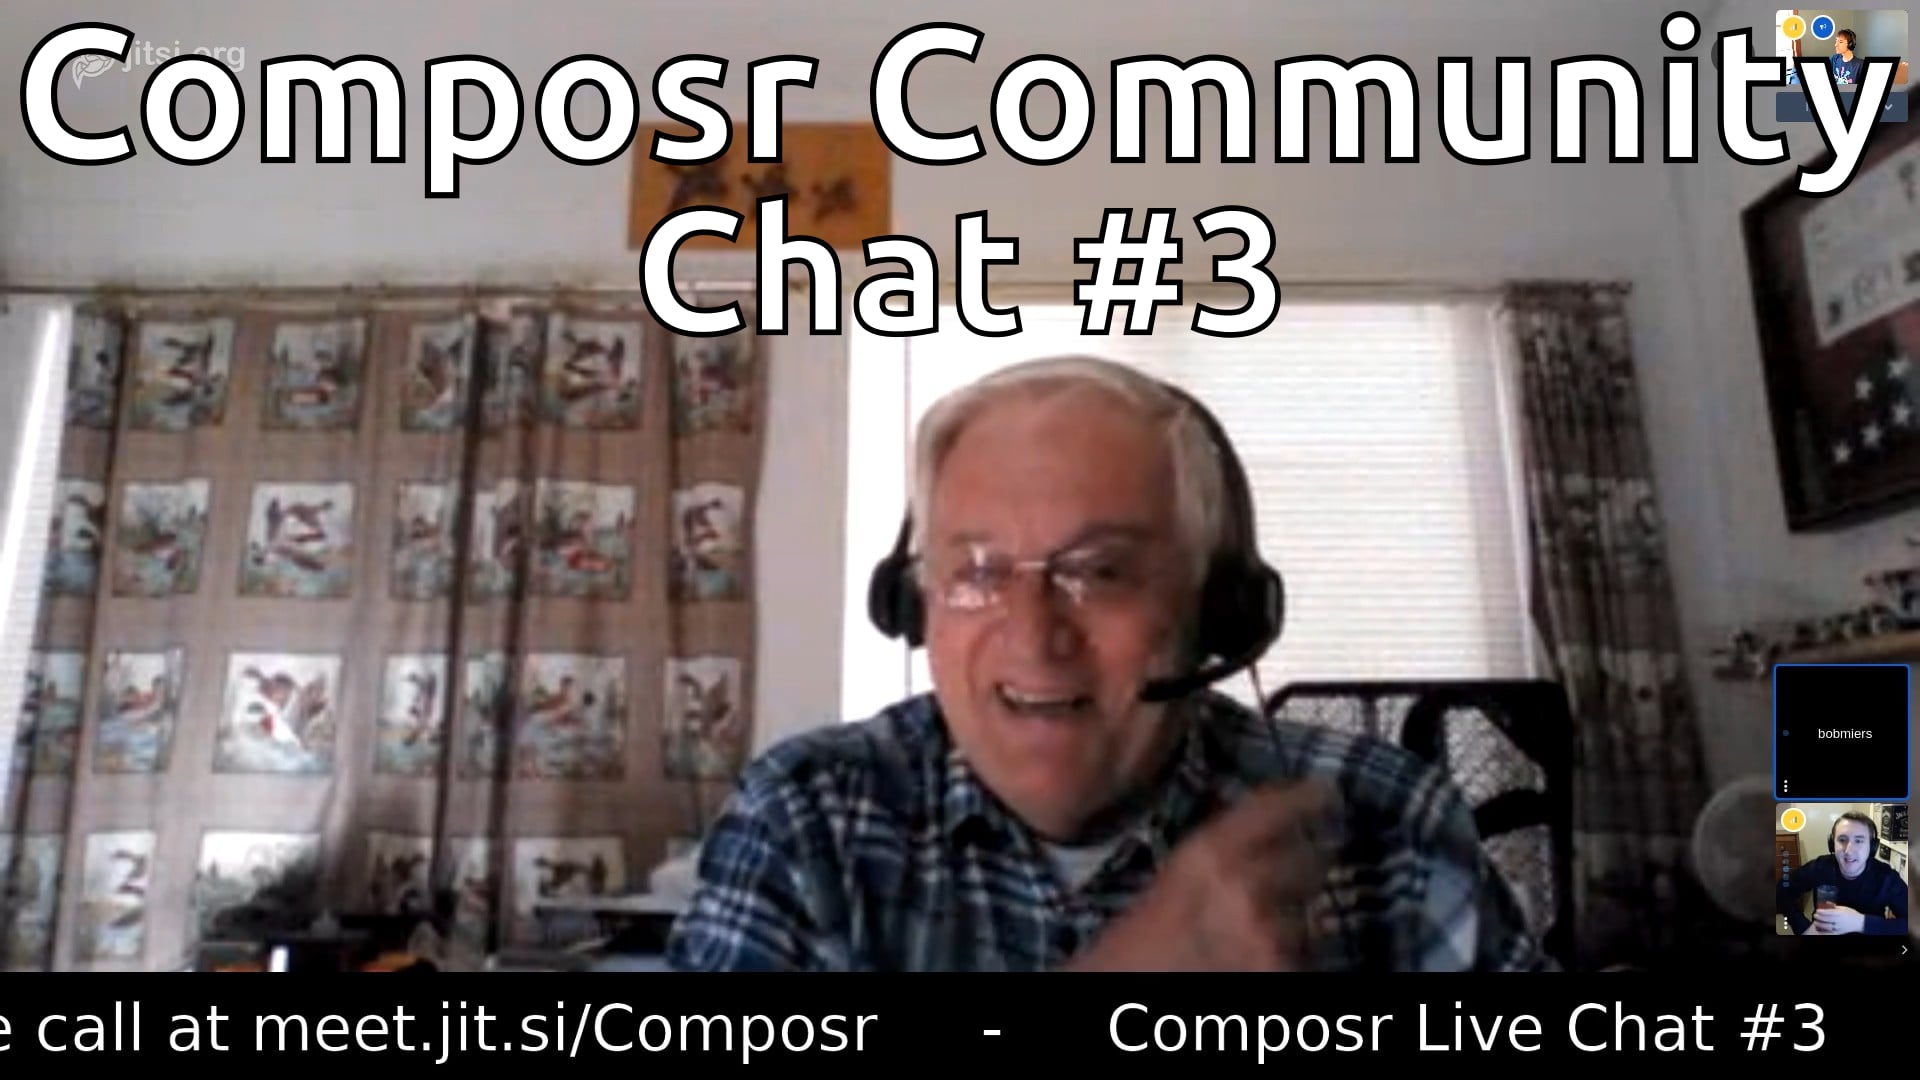 Composr Community Chat #3